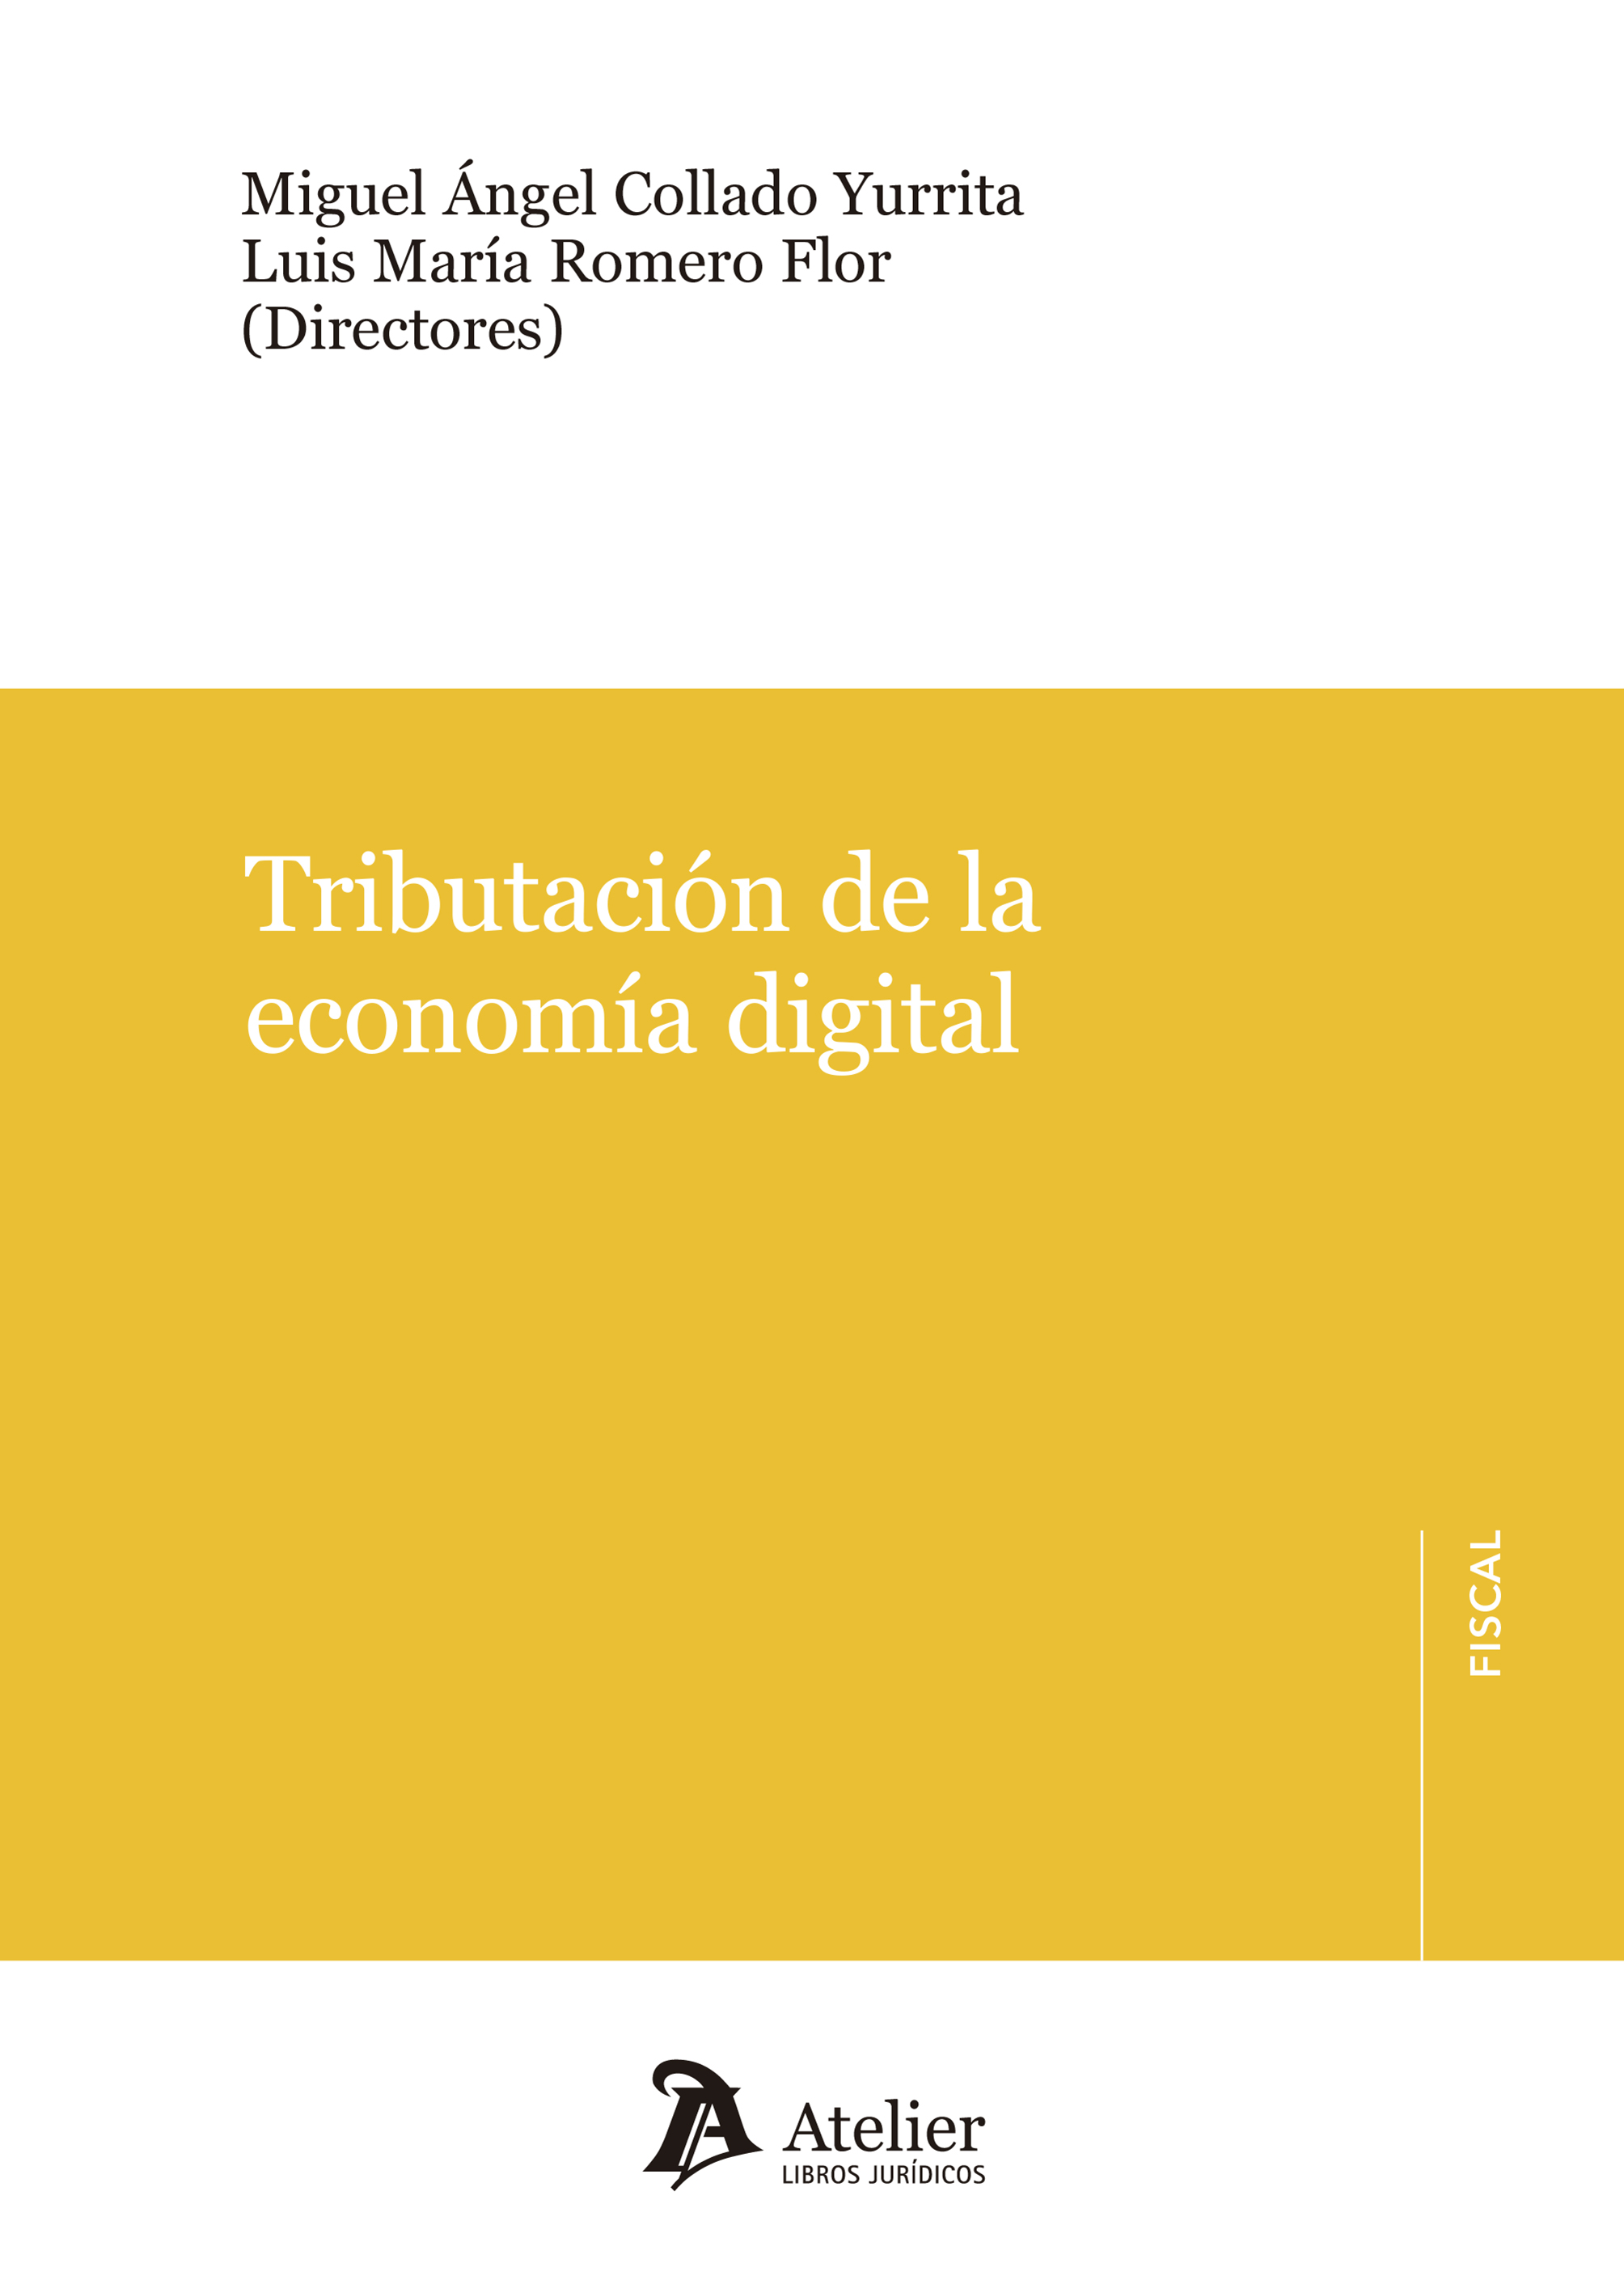 Imagen de portada del libro Tributación de la economía digital